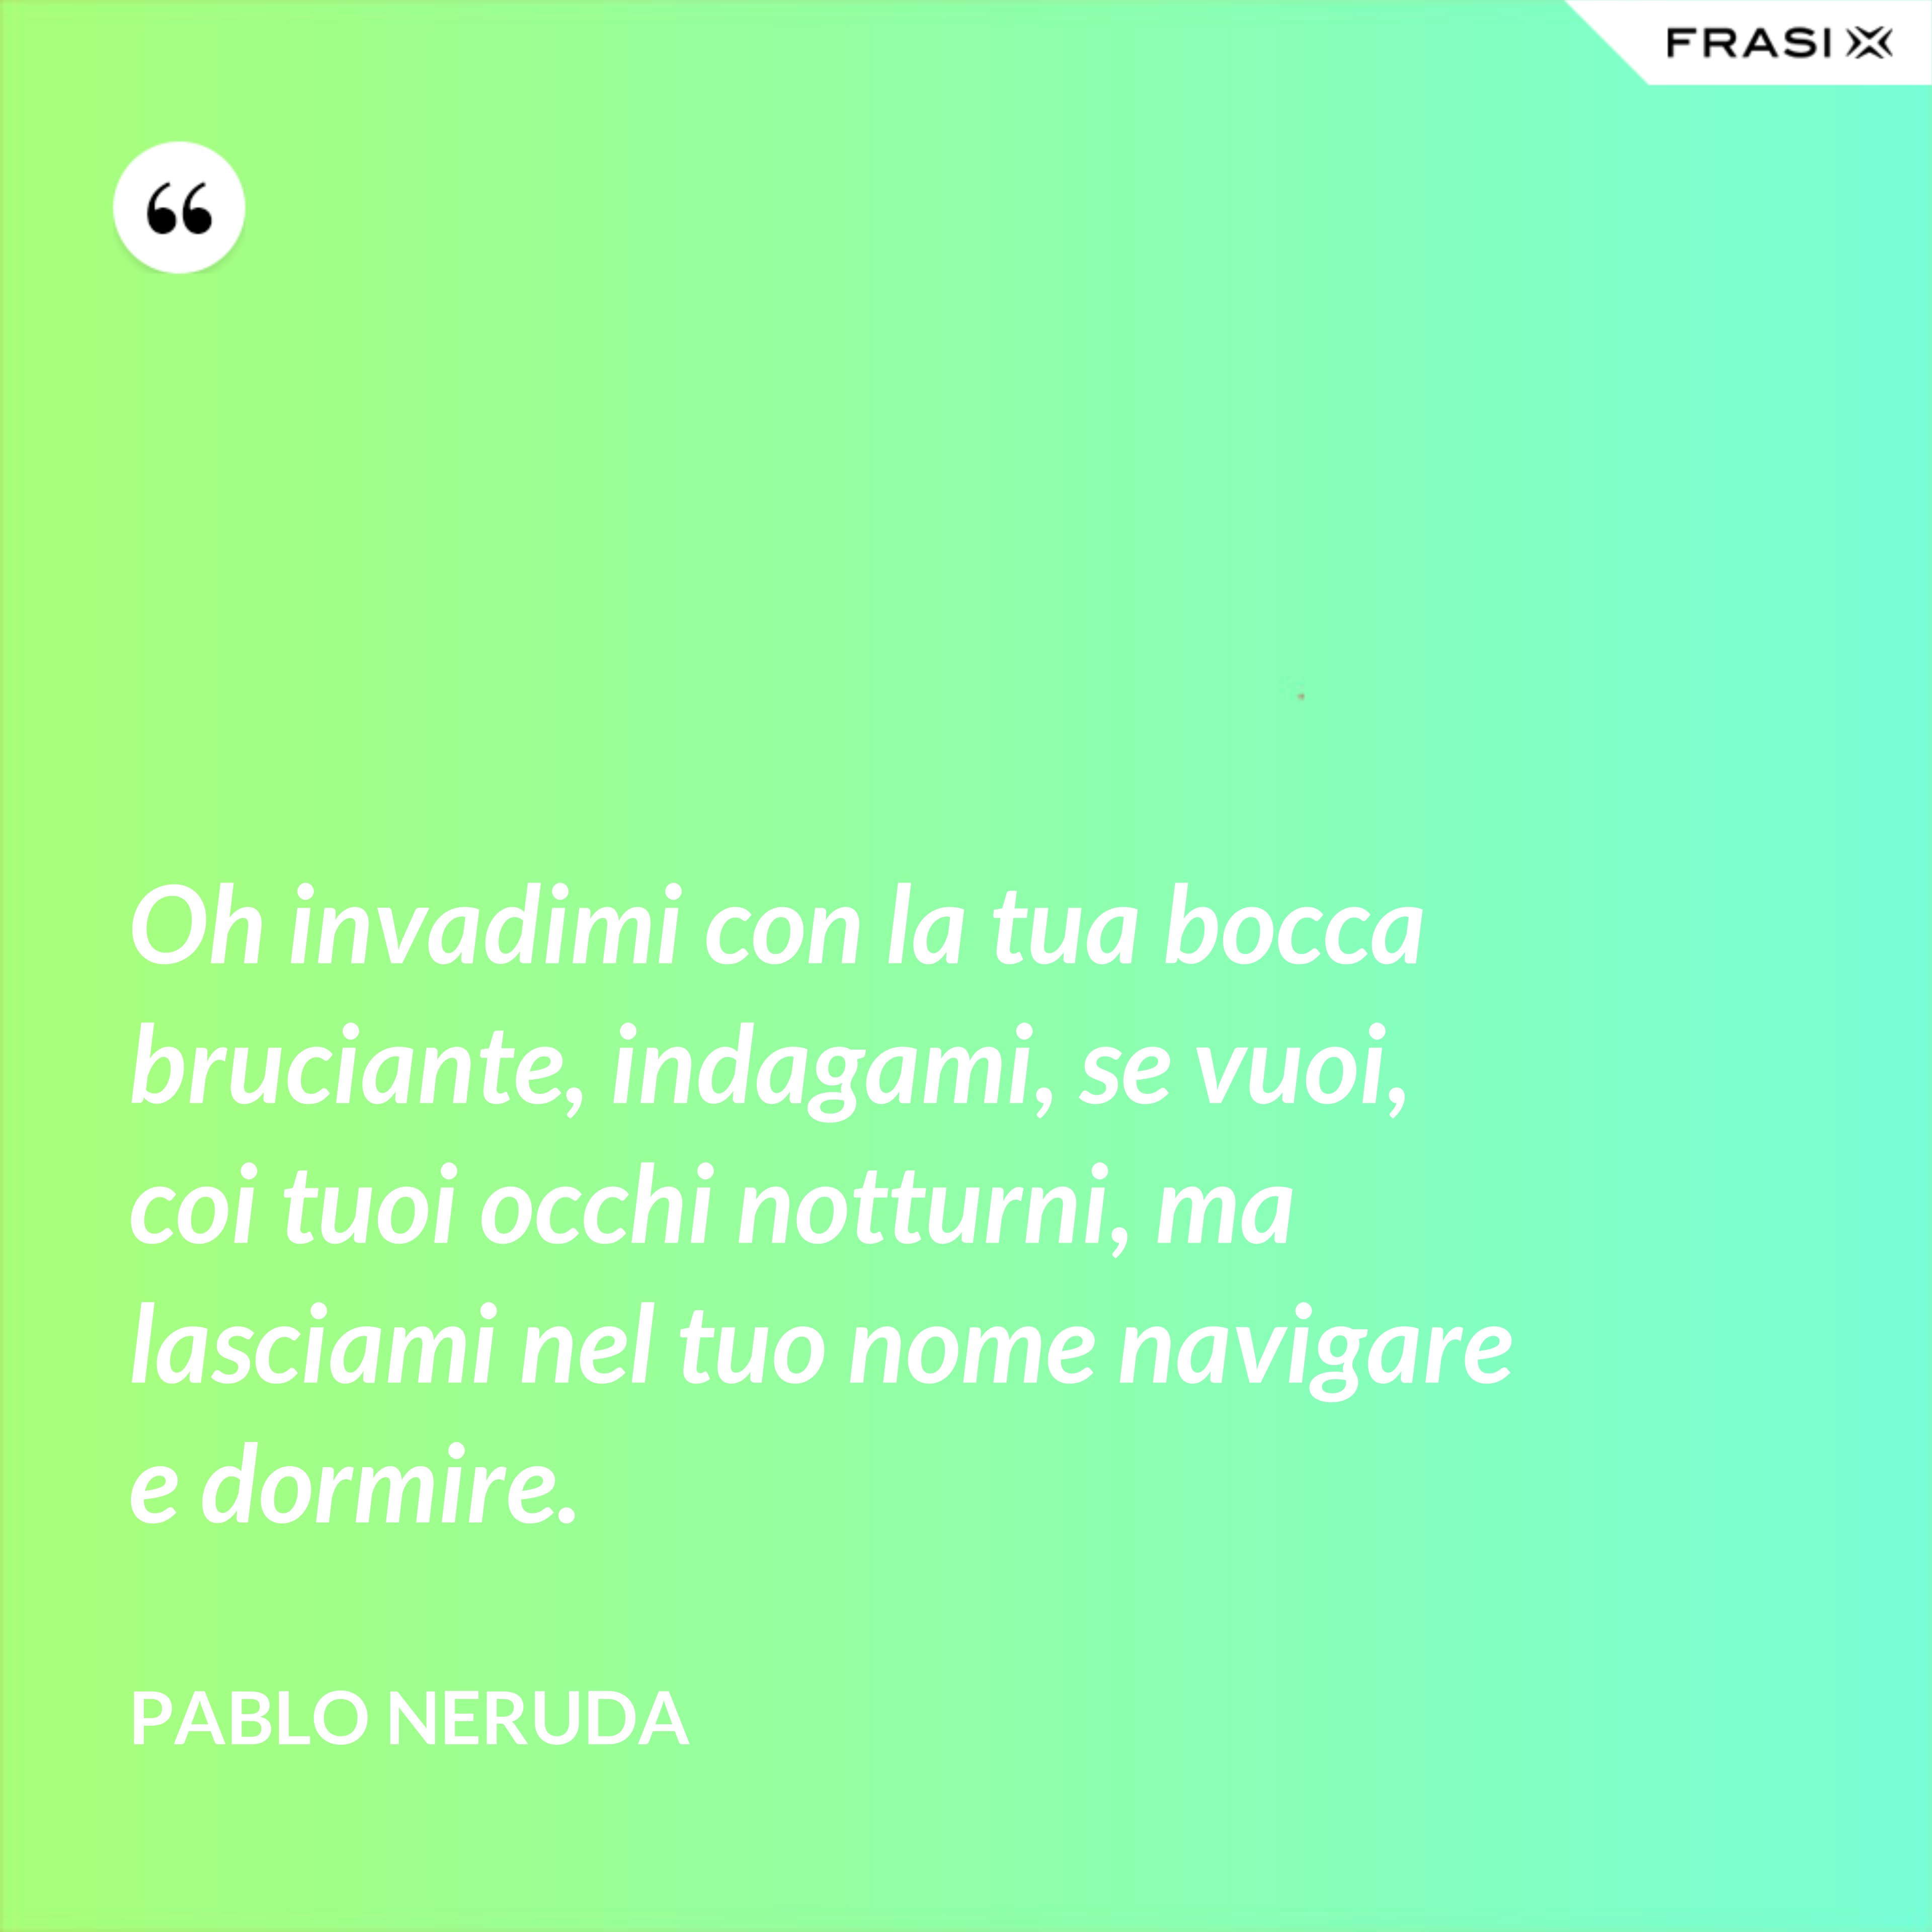 Oh invadimi con la tua bocca bruciante, indagami, se vuoi, coi tuoi occhi notturni, ma lasciami nel tuo nome navigare e dormire. - Pablo Neruda